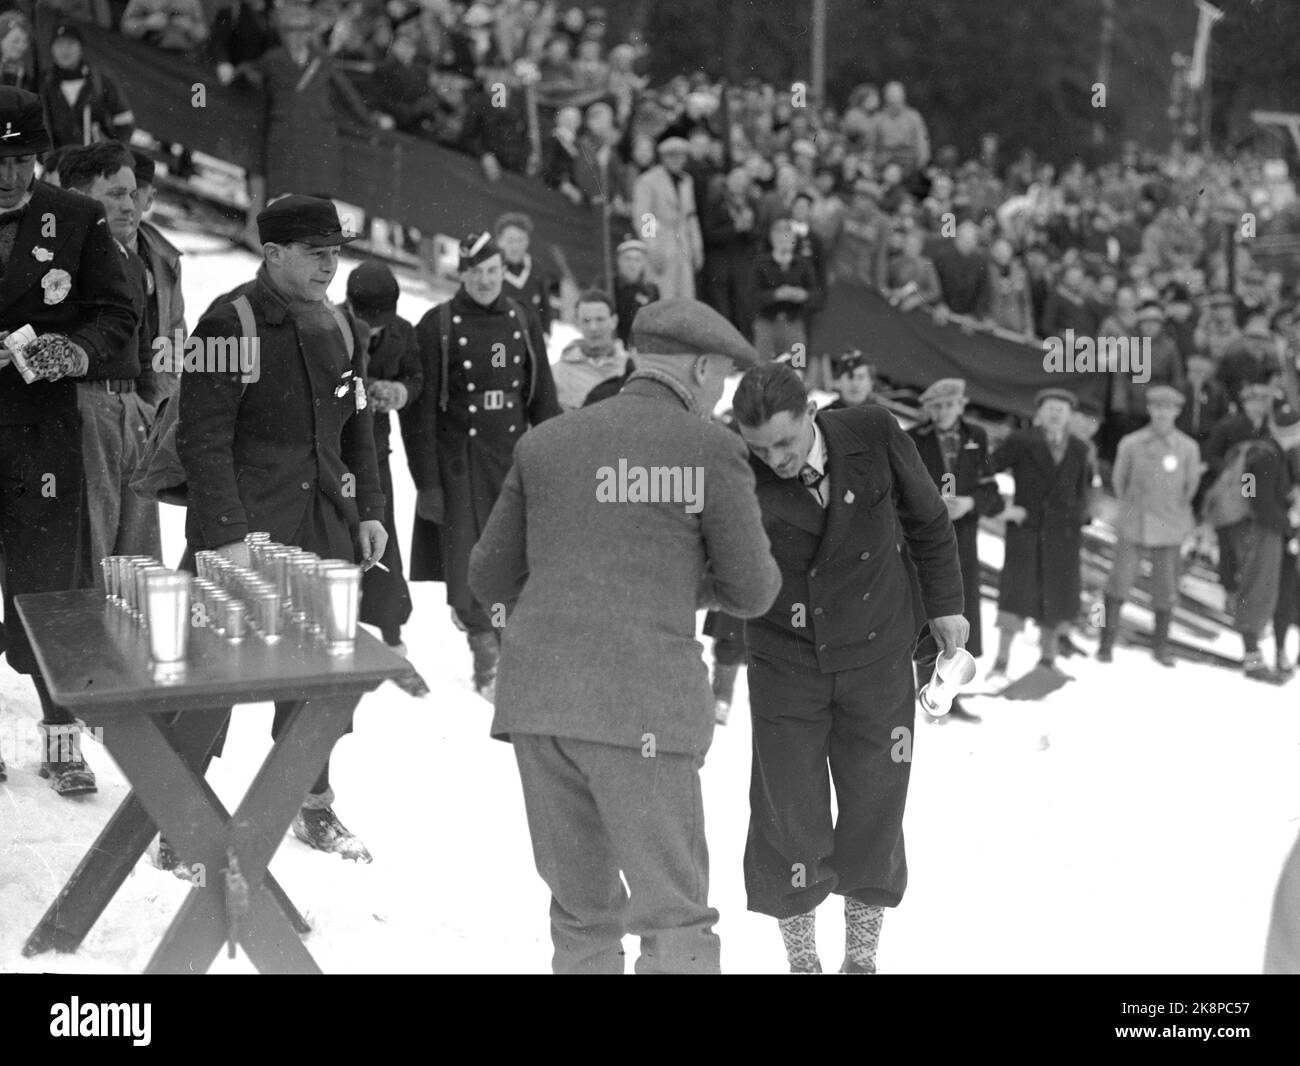 Oslo 19350303 Arne Rustadstuen riceve un trofeo a Holmenkollen. Arne Rustadstuen (Norwegian, 14/12 1905 – 25/4 1978) è stato un . Ha preso l'oro a 17 km durante la Coppa del mondo di Oslo nel 1930, e t bronzo in combinato durante la Coppa del mondo di Oberhof 1931. Durante le Olimpiadi del 1932 prese il bronzo a cinque miglia. Rustadstuen ha partecipato anche alle Olimpiadi del 1936 a Garmisch-Partenkirchen. Nel 1935 riceve la medaglia Holmenkoll. Foto; NTB / NTB Foto Stock